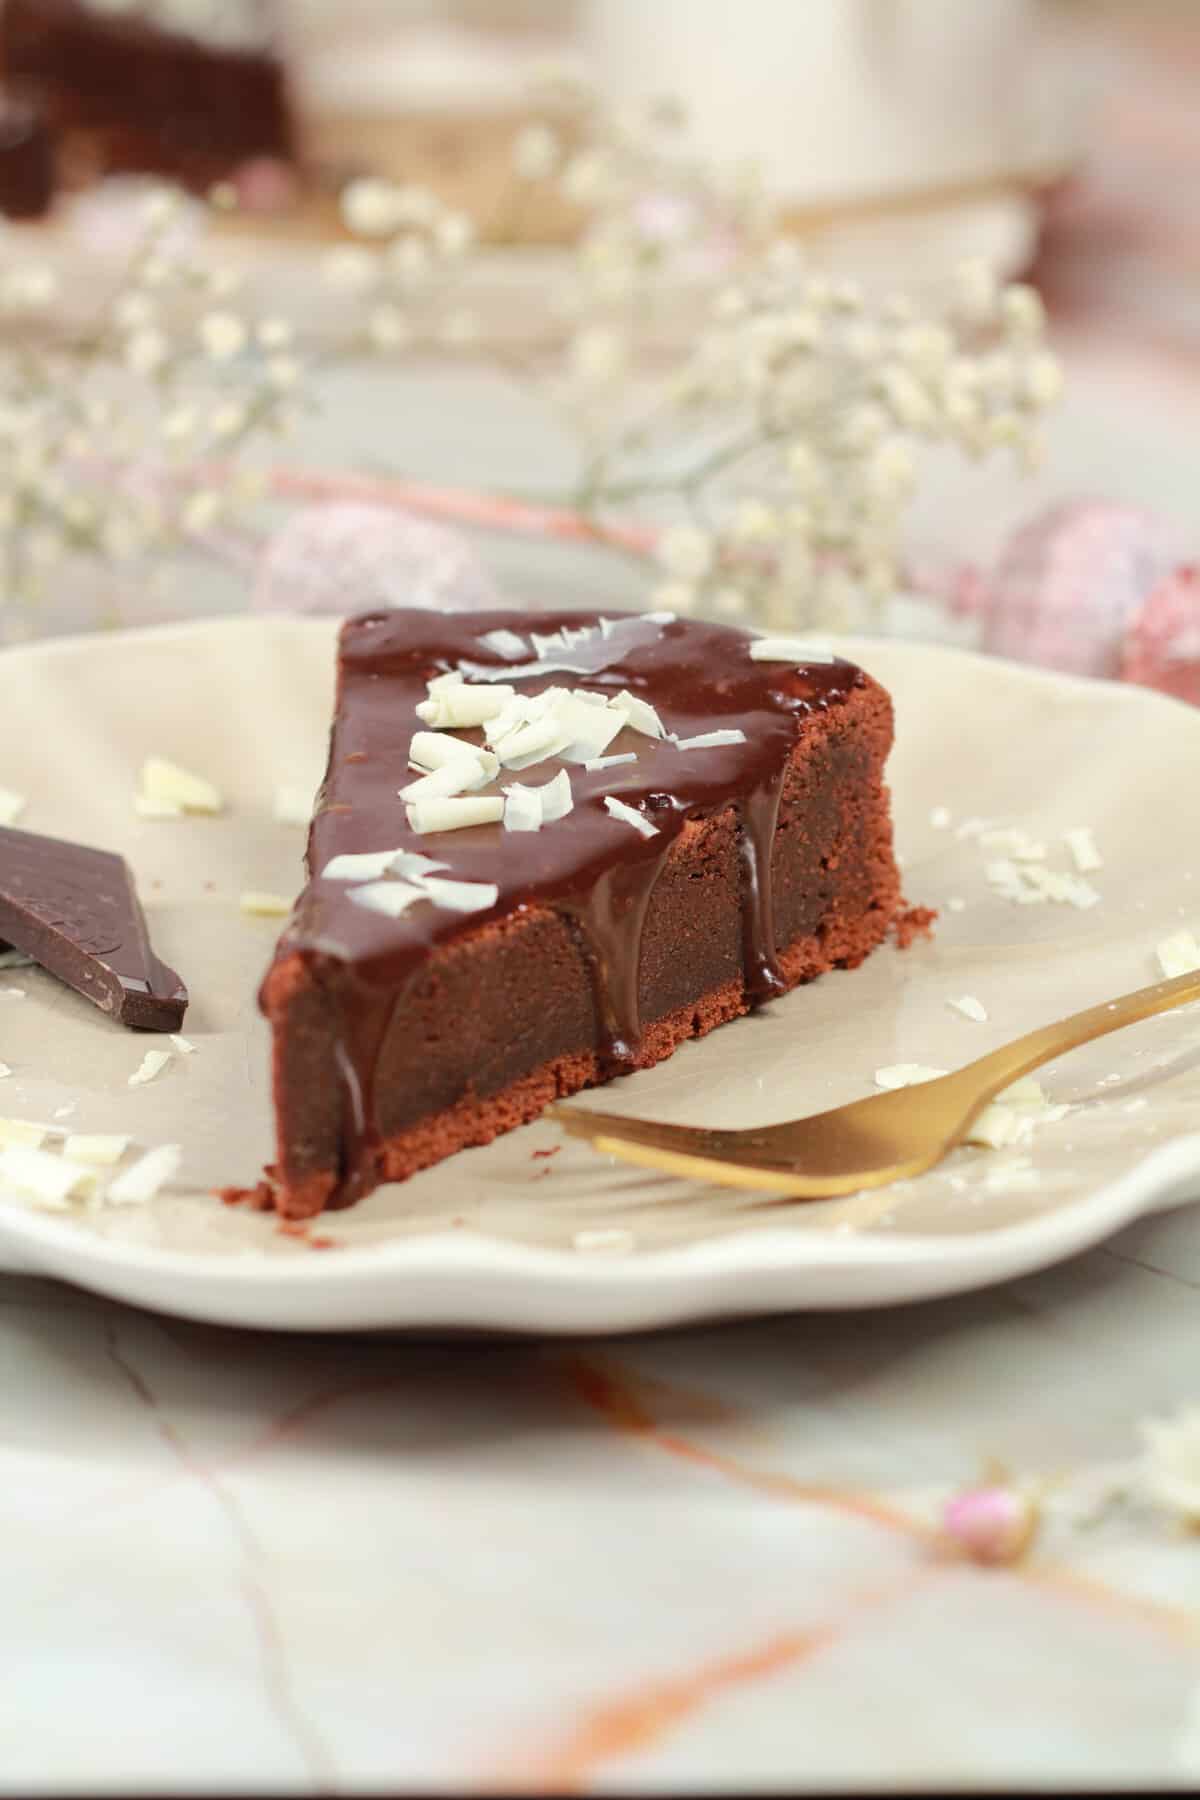 Ein Stück Schokoladenkuchen mit weissen Schoko raspeln darauf.